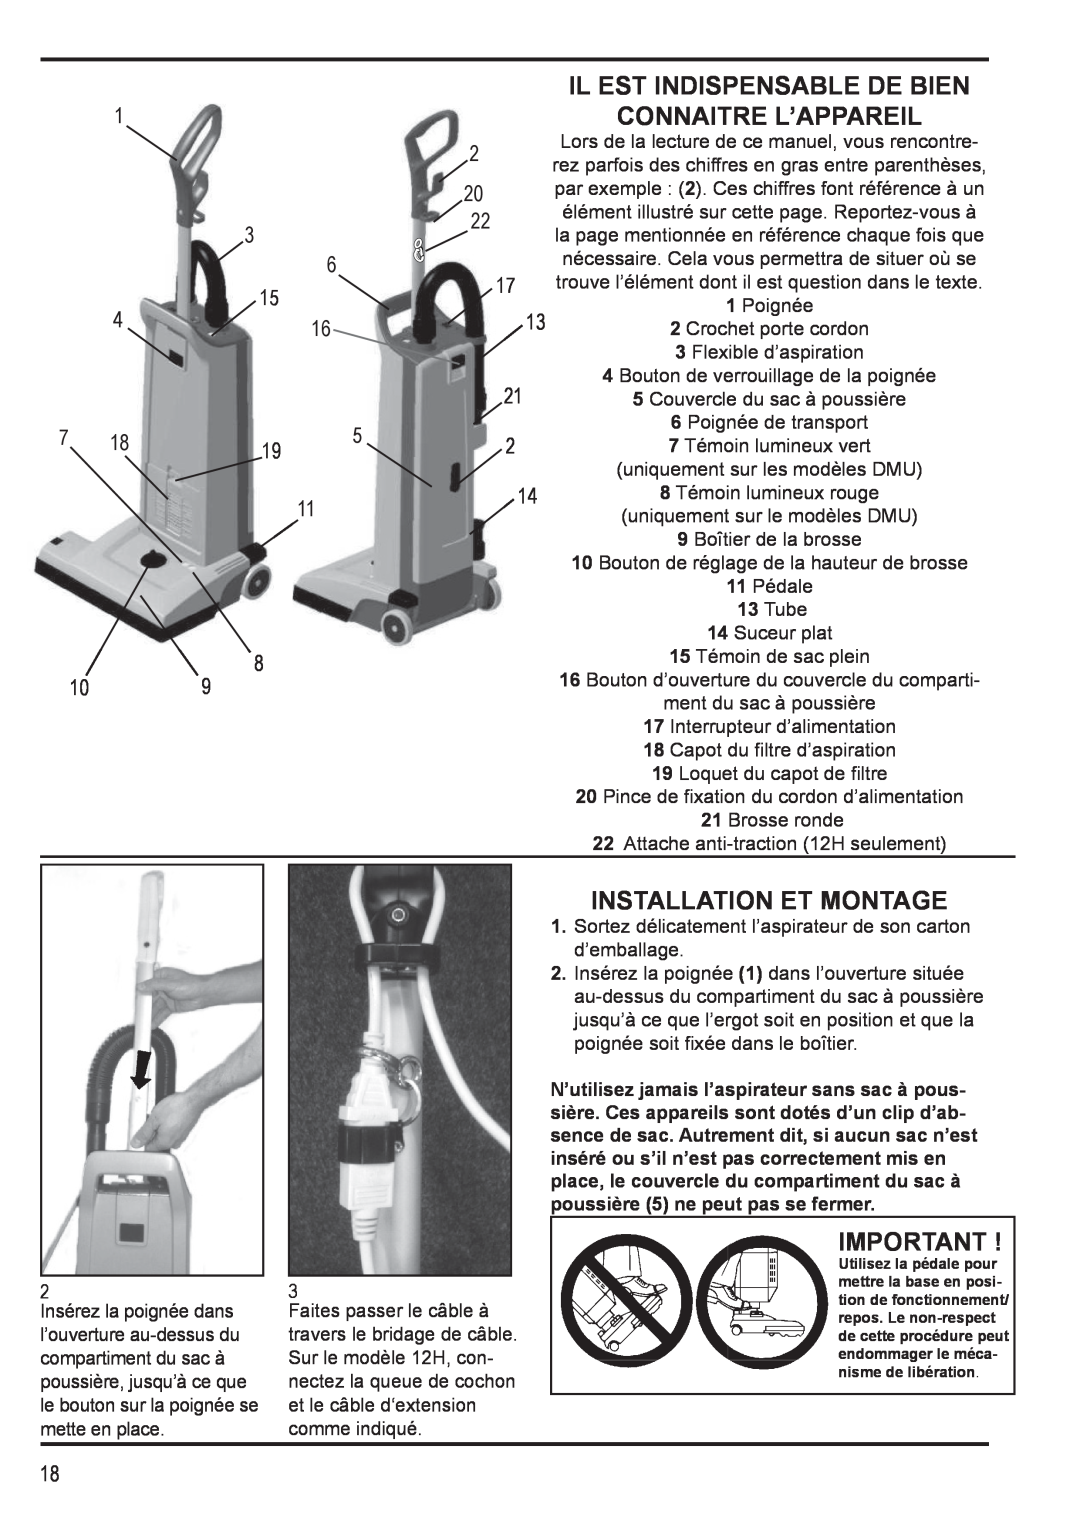 Nilfisk-Advance America 12H manual Il Est Indispensable De Bien Connaitre L’Appareil, Installation Et Montage 